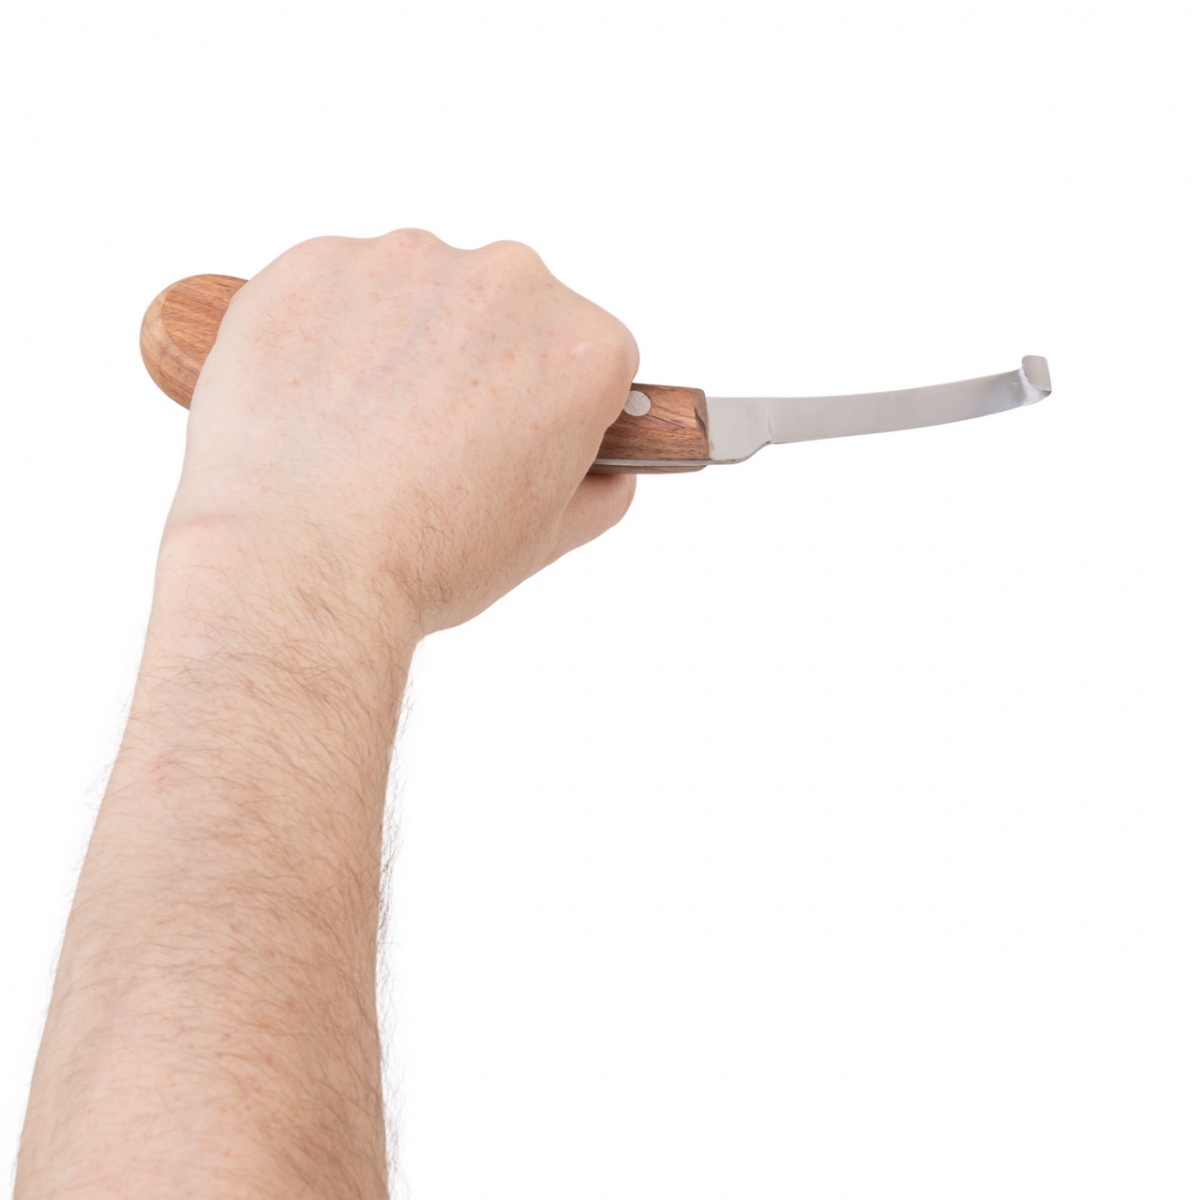 Patafaragó és körmöző kés, egy élű, bal kézbe